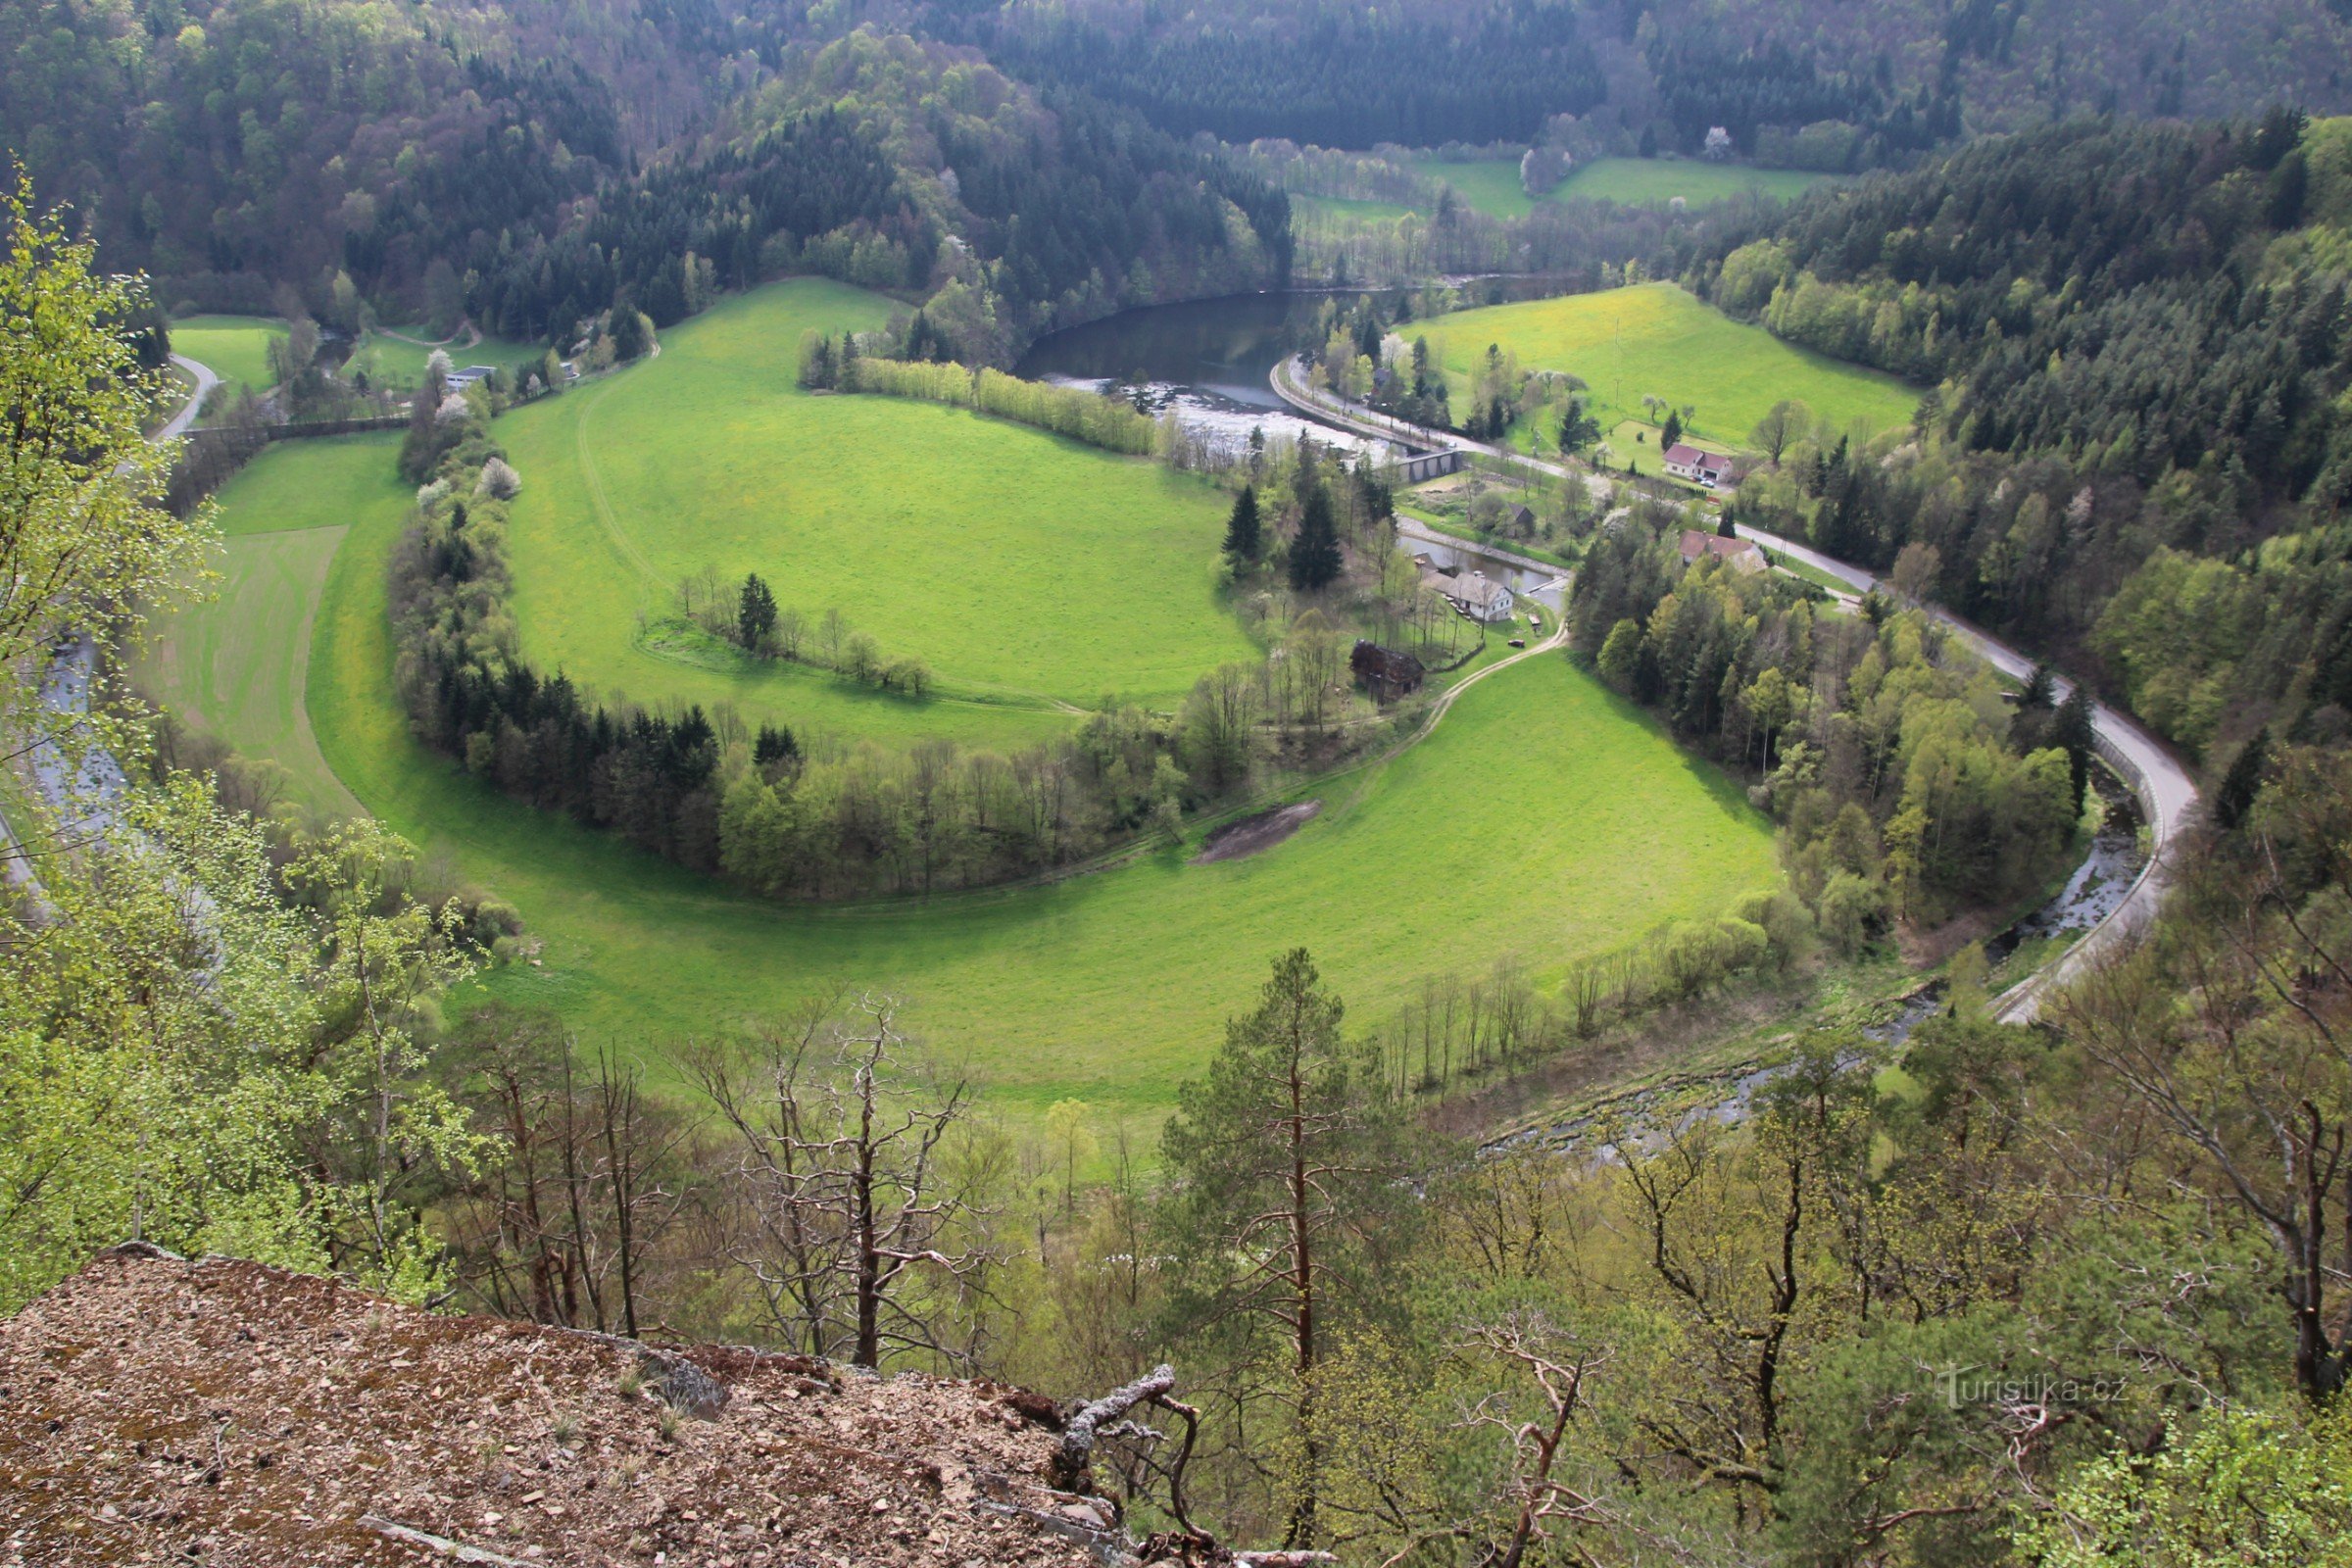 Widok na dolinę przy szerokim meandrze rzeki Svratki, przez którą przechodzi podziemny podajnik